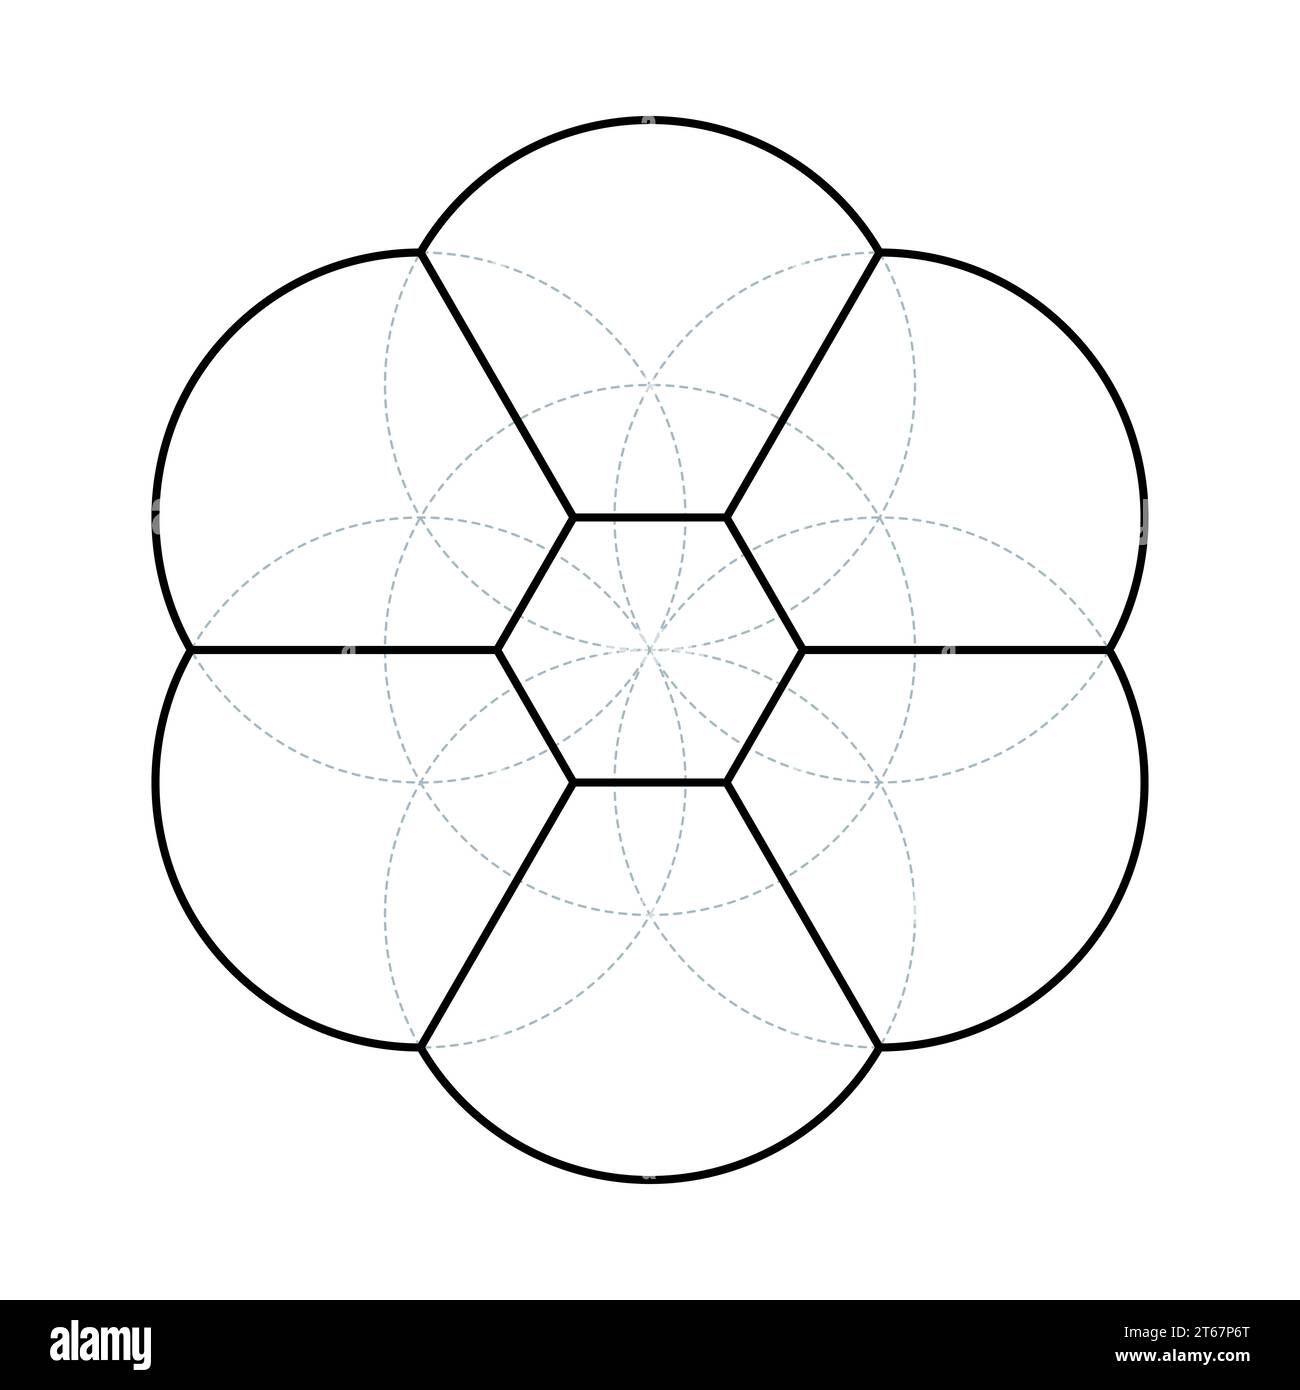 Seed of Life 3D-Ansicht. Antike geometrische Figur, spirituelles Symbol und Heilige Geometrie. Aus 7 überlappenden Kreisen, die ein blumenähnliches Muster bilden. Stockfoto